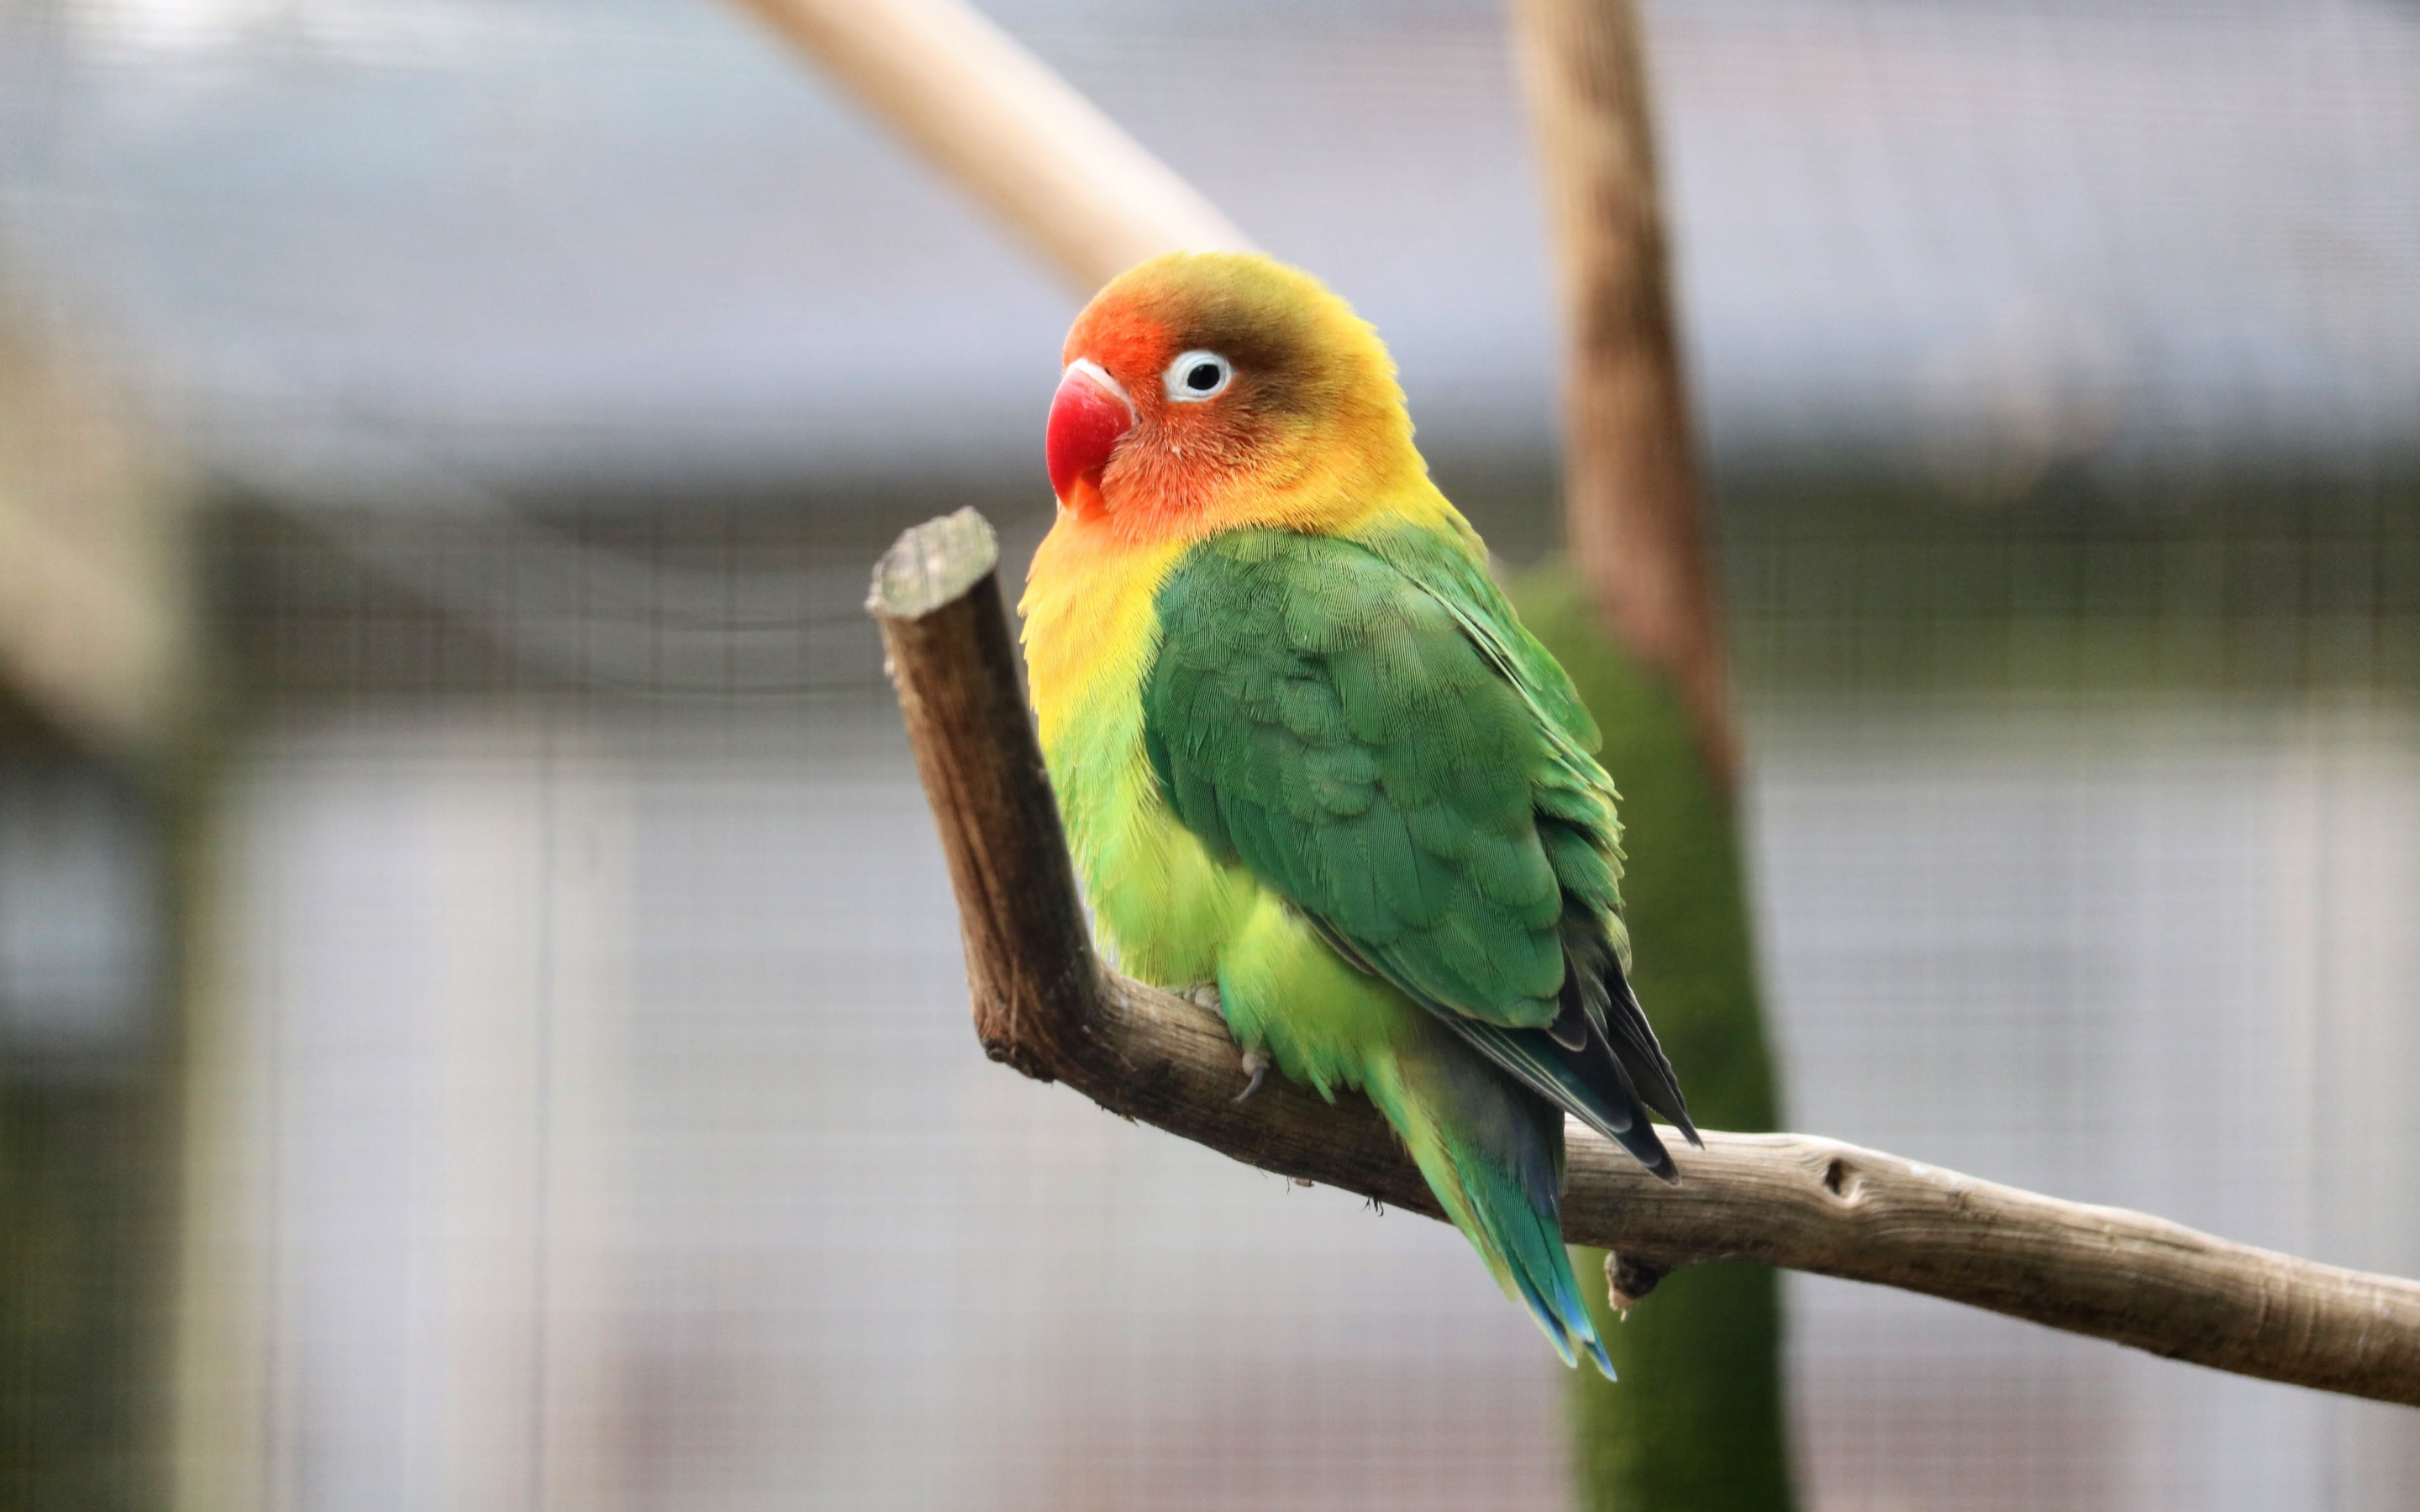 Parrot, tropical bird, cute, 2880x1800 wallpaper